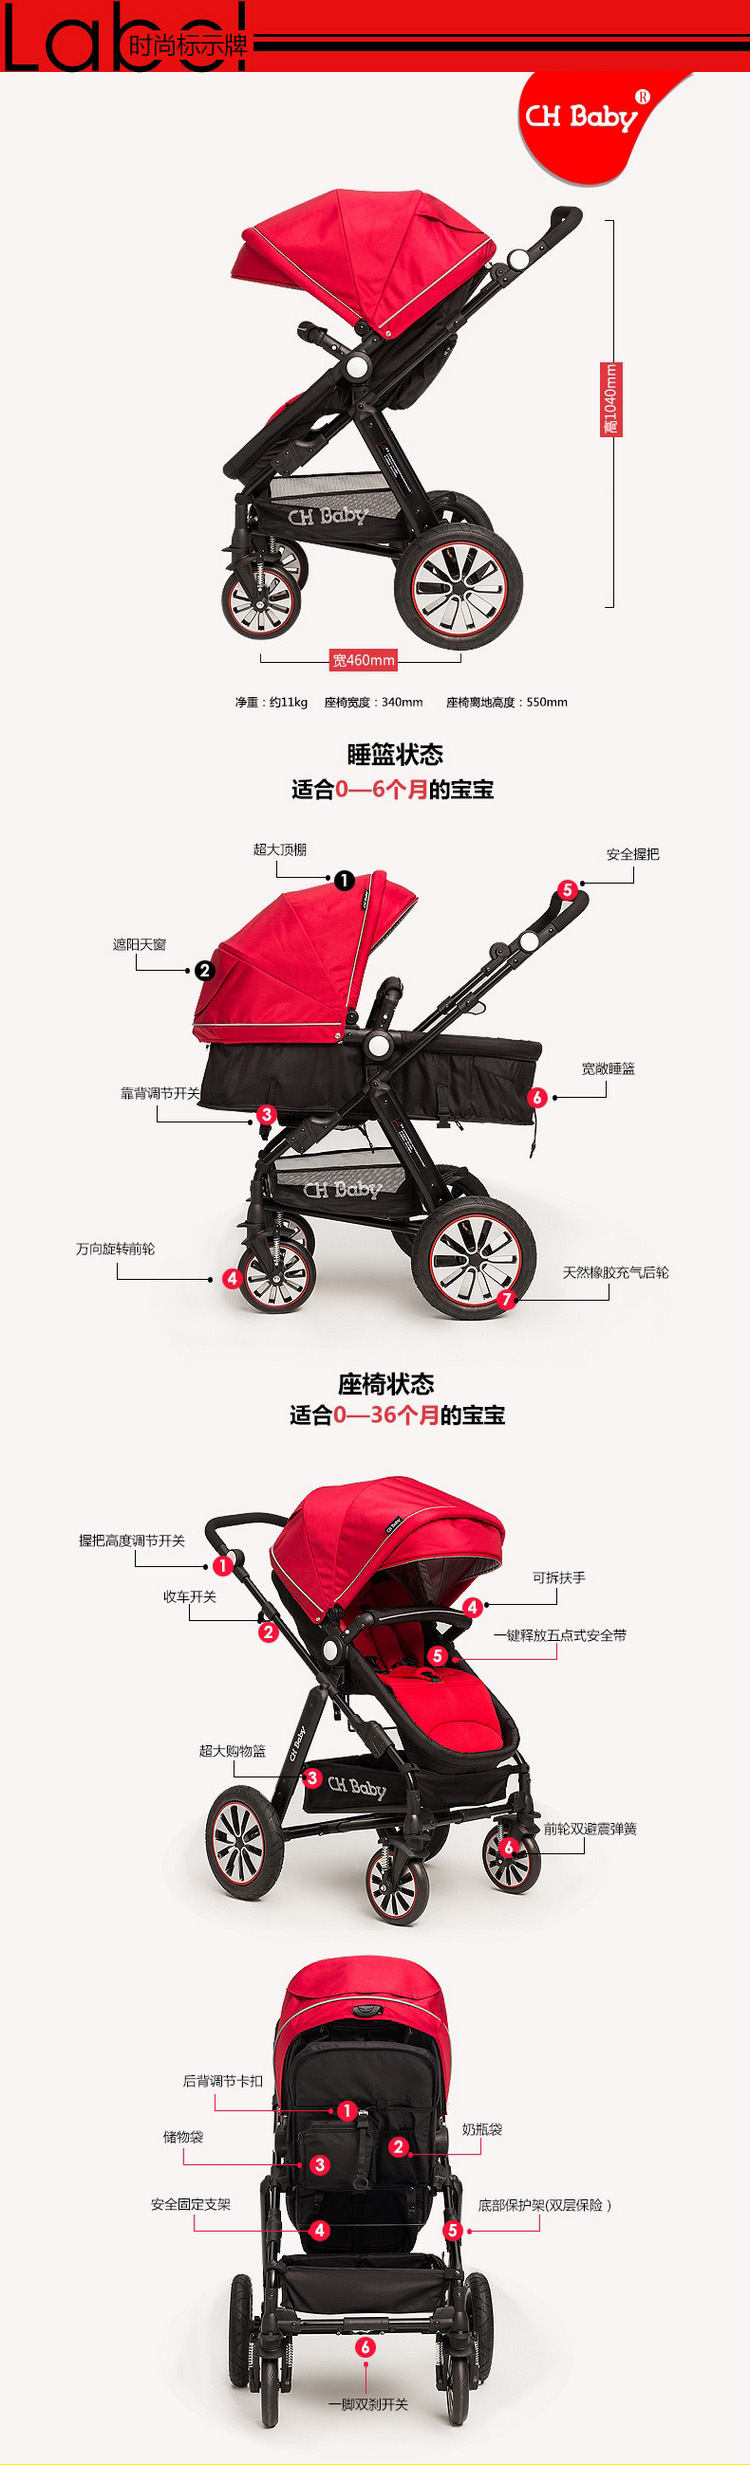 CHBABY豪华避震高景观充气轮双向婴儿推车A725A运动版 红色